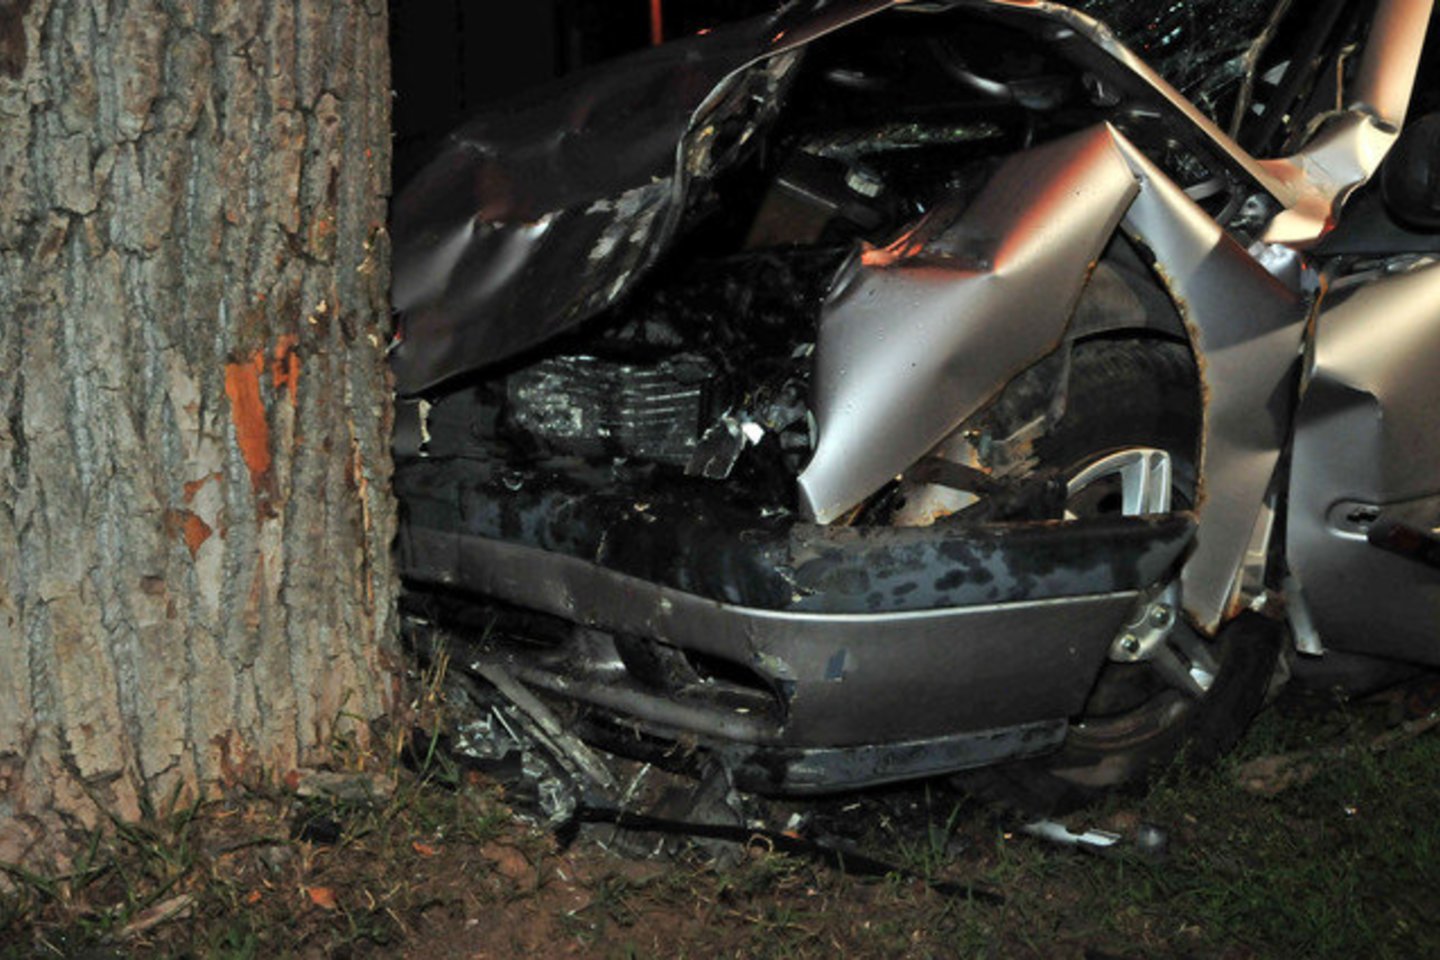  Jurbarko rajone automobilis rėžėsi į medį, prispaustą vairruotoją vadavo ugniagesiai.<br> Lrytas.lt asociatyvioji nuotr.